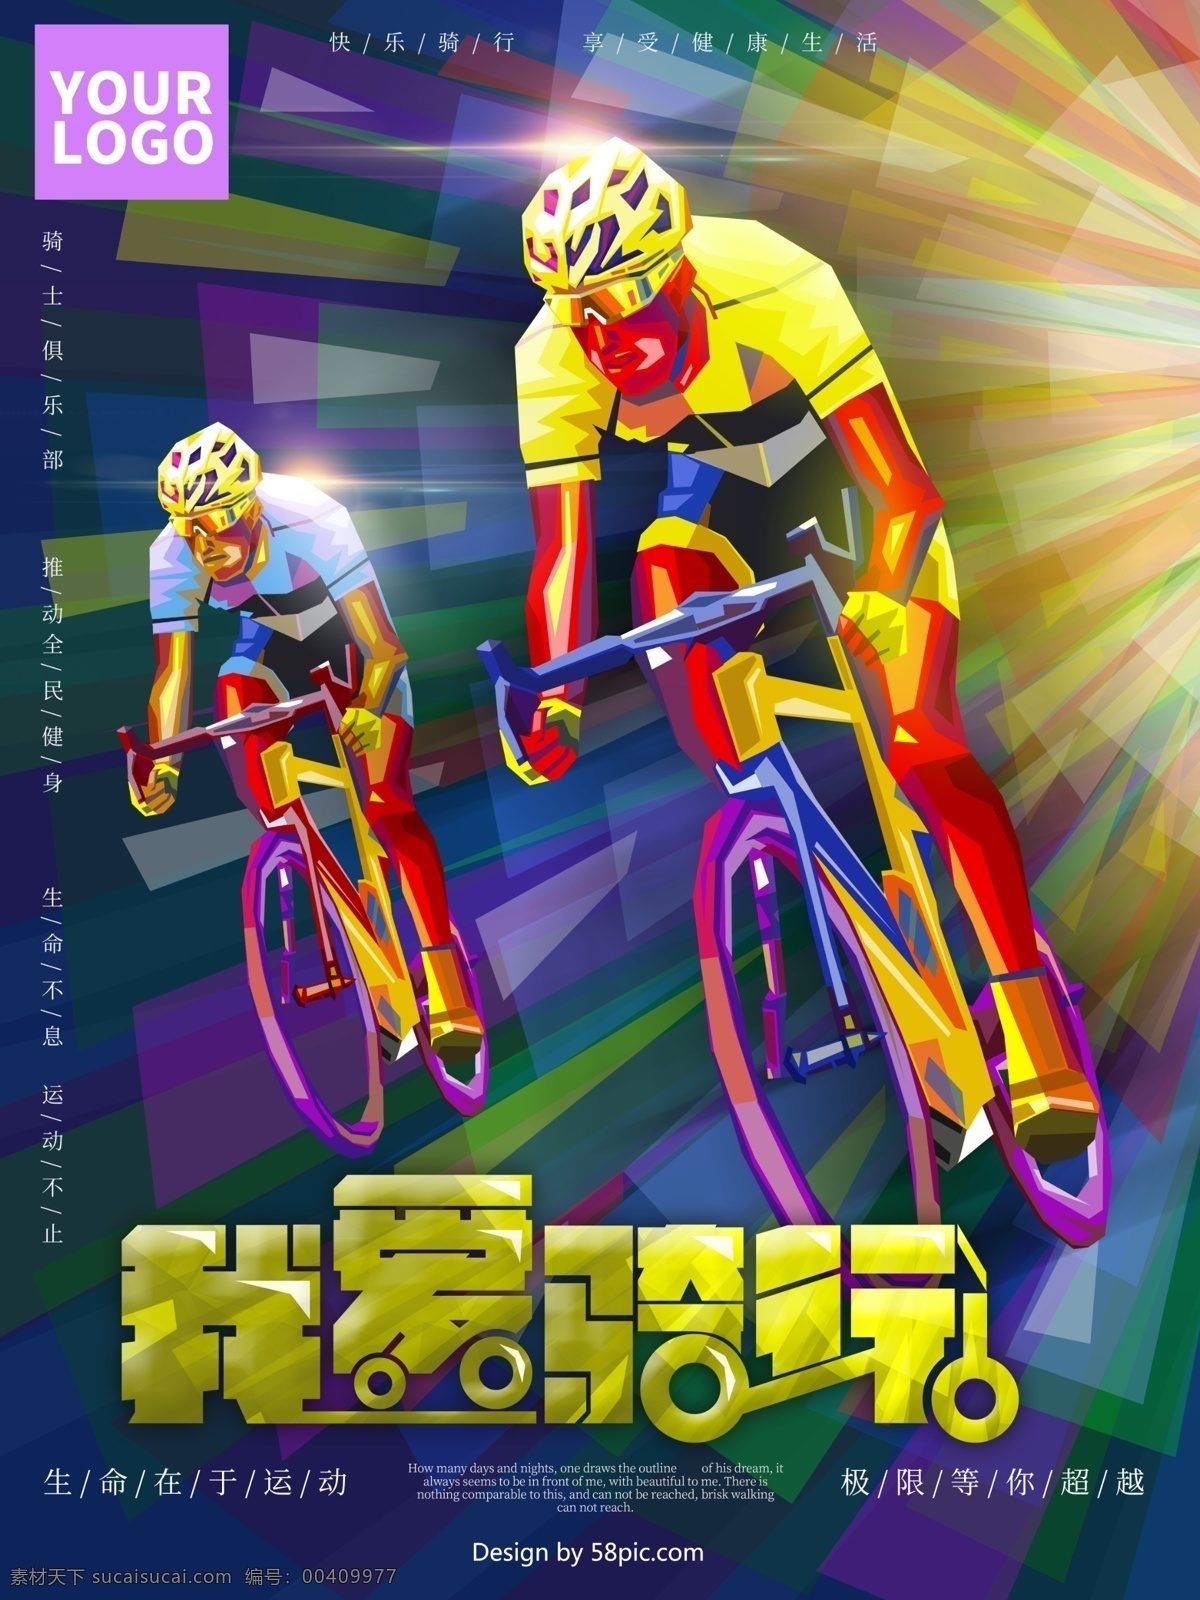 原创 手绘 运动 健身 骑 行 海报 自行车赛 自行车广告 郊游 动感单车 骑车人物 自行车比赛 自行车大赛 山地自行车赛 骑自行车 户外运动 单车 单车俱乐部 单车运动 户外活动 骑行